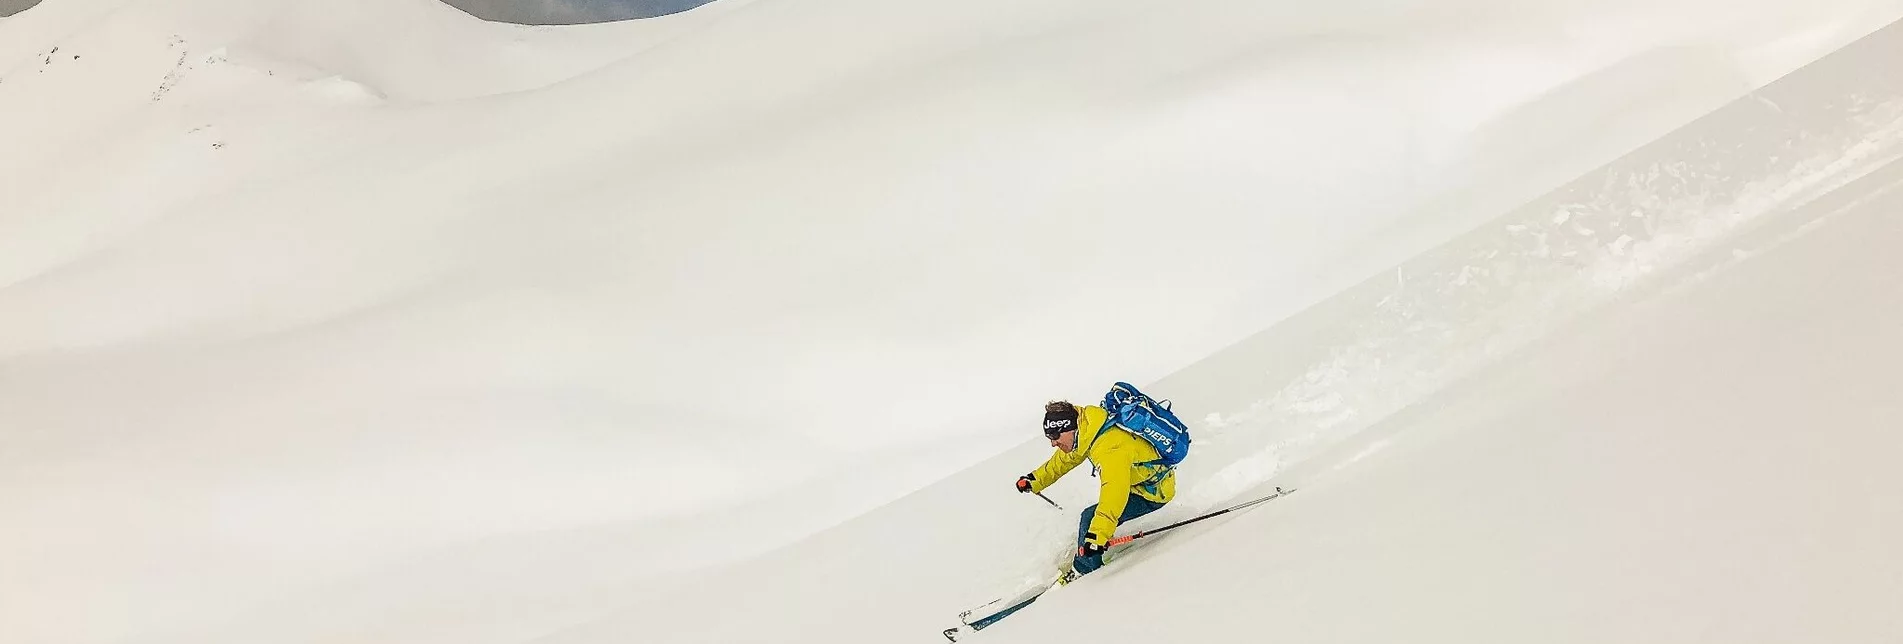 Backcountry Skiing Gruberscharte - Touren-Impression #1 | © Erlebnisregion Schladming-Dachstein